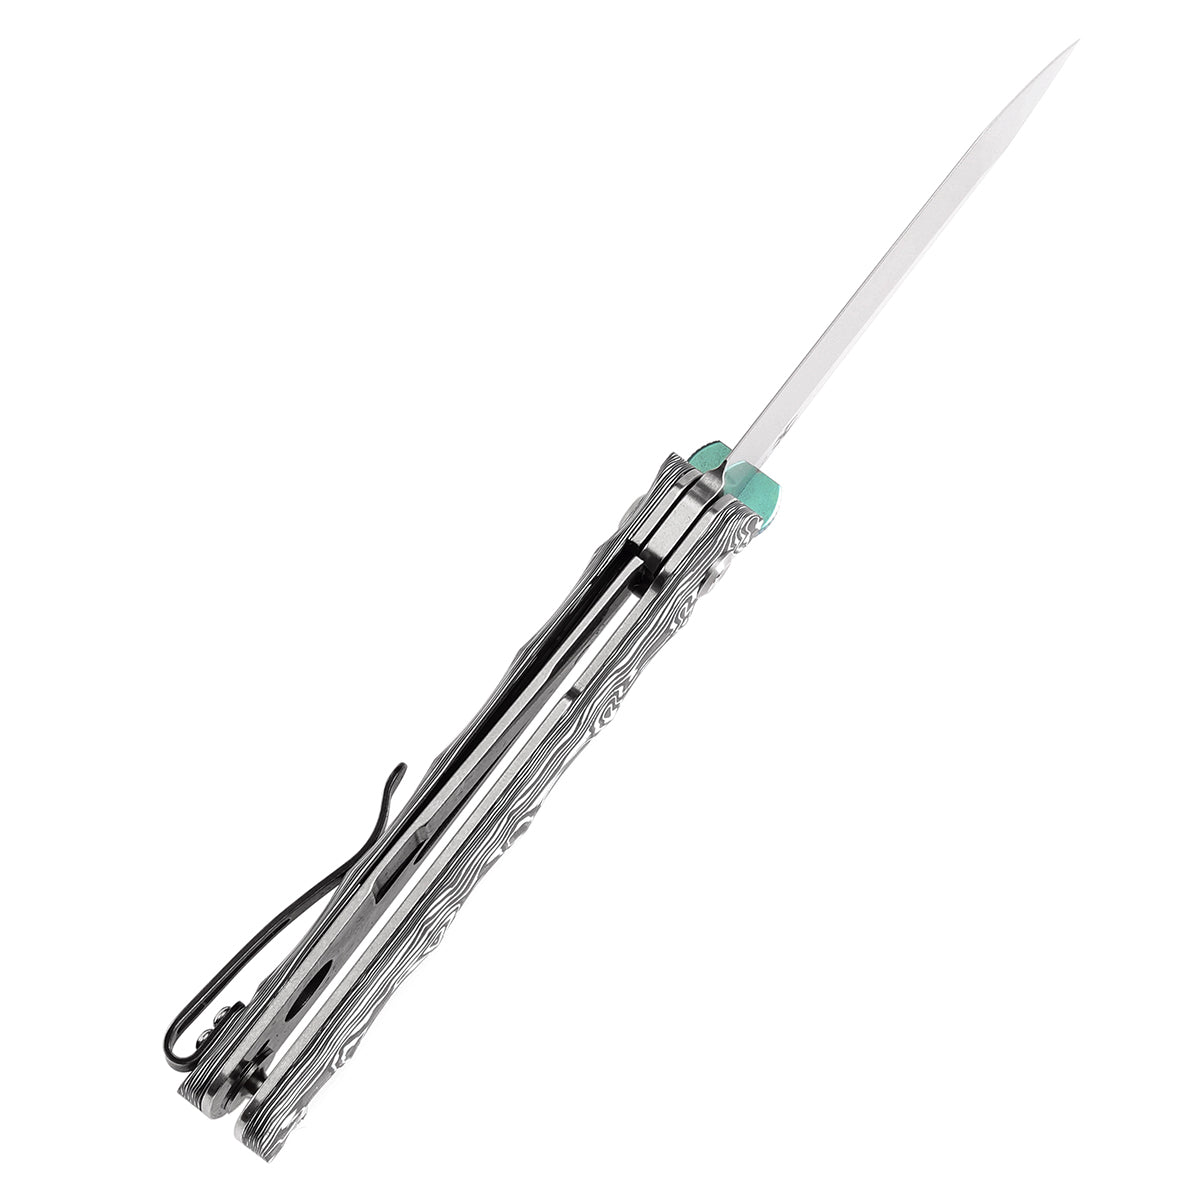 Kansept BTF K1064A3 CPM-S35VN Blade Black White Nebula Carbon Fiber Handle Edc Flipper Knife